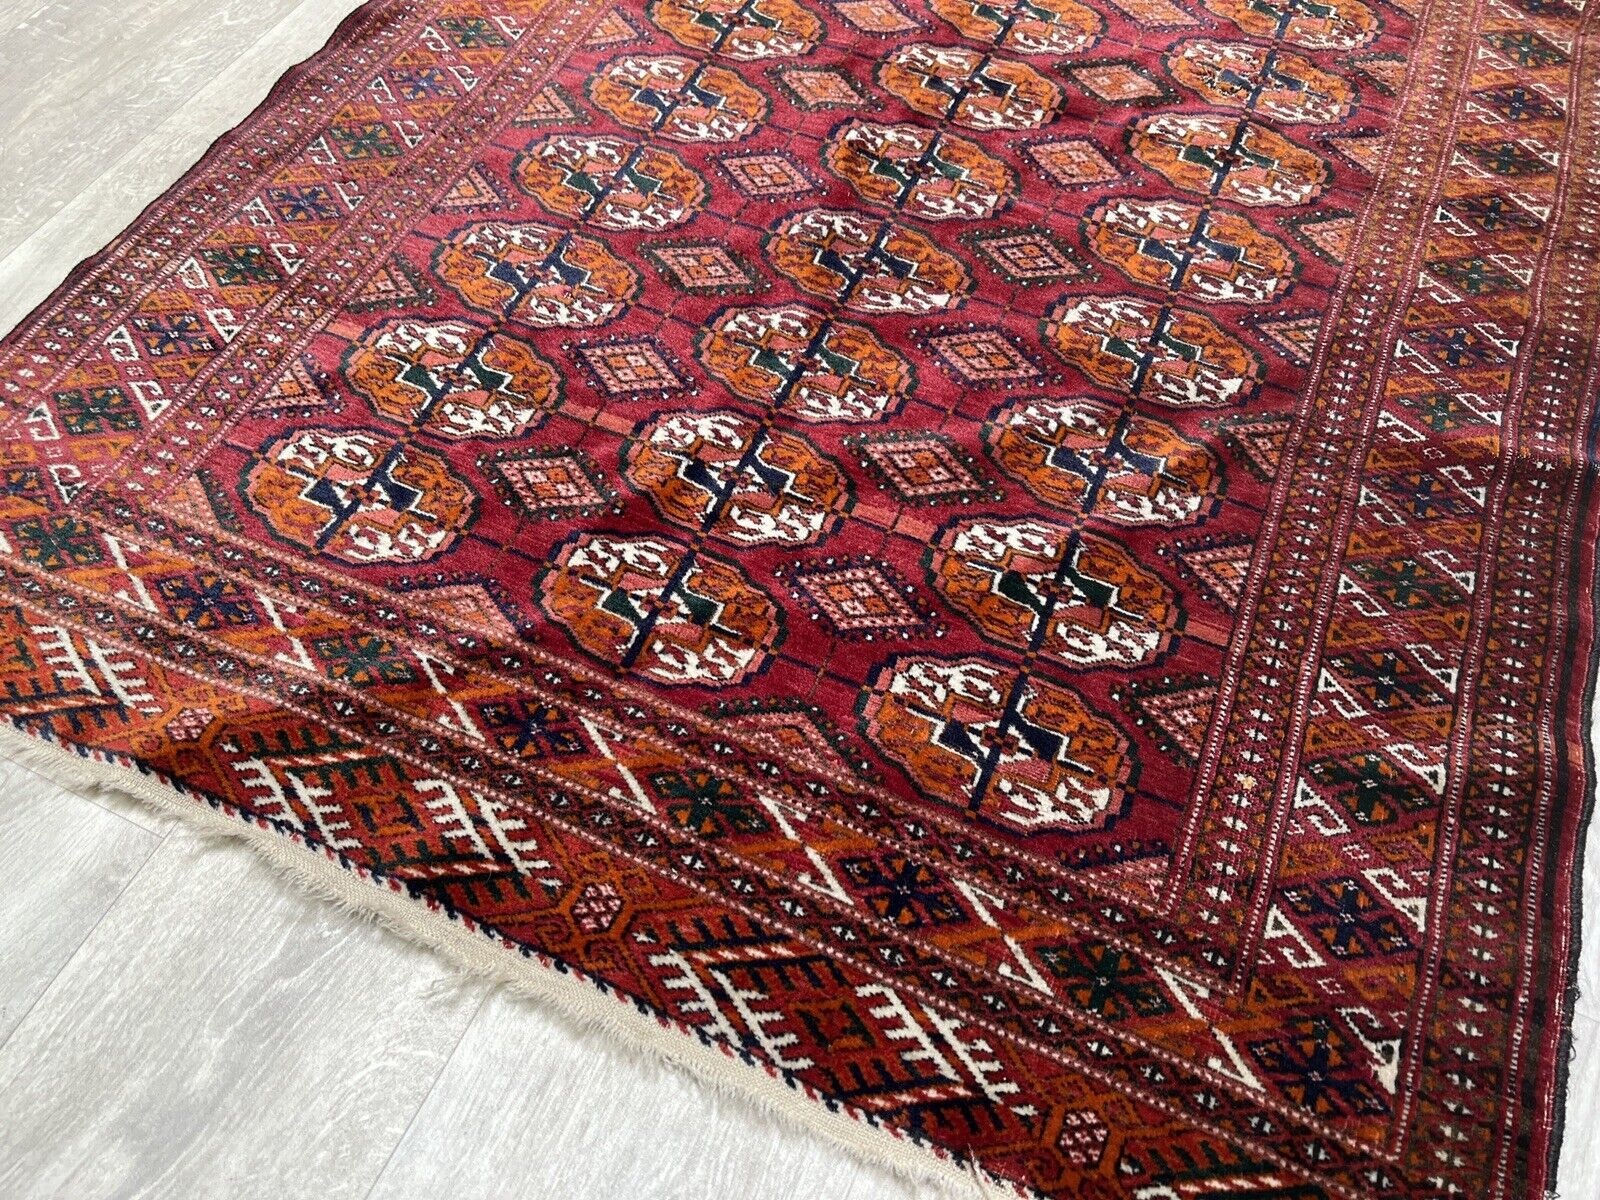 155x103 cm antique ersari hand-knotted  turkmen  bukhara  carpet. 22/4